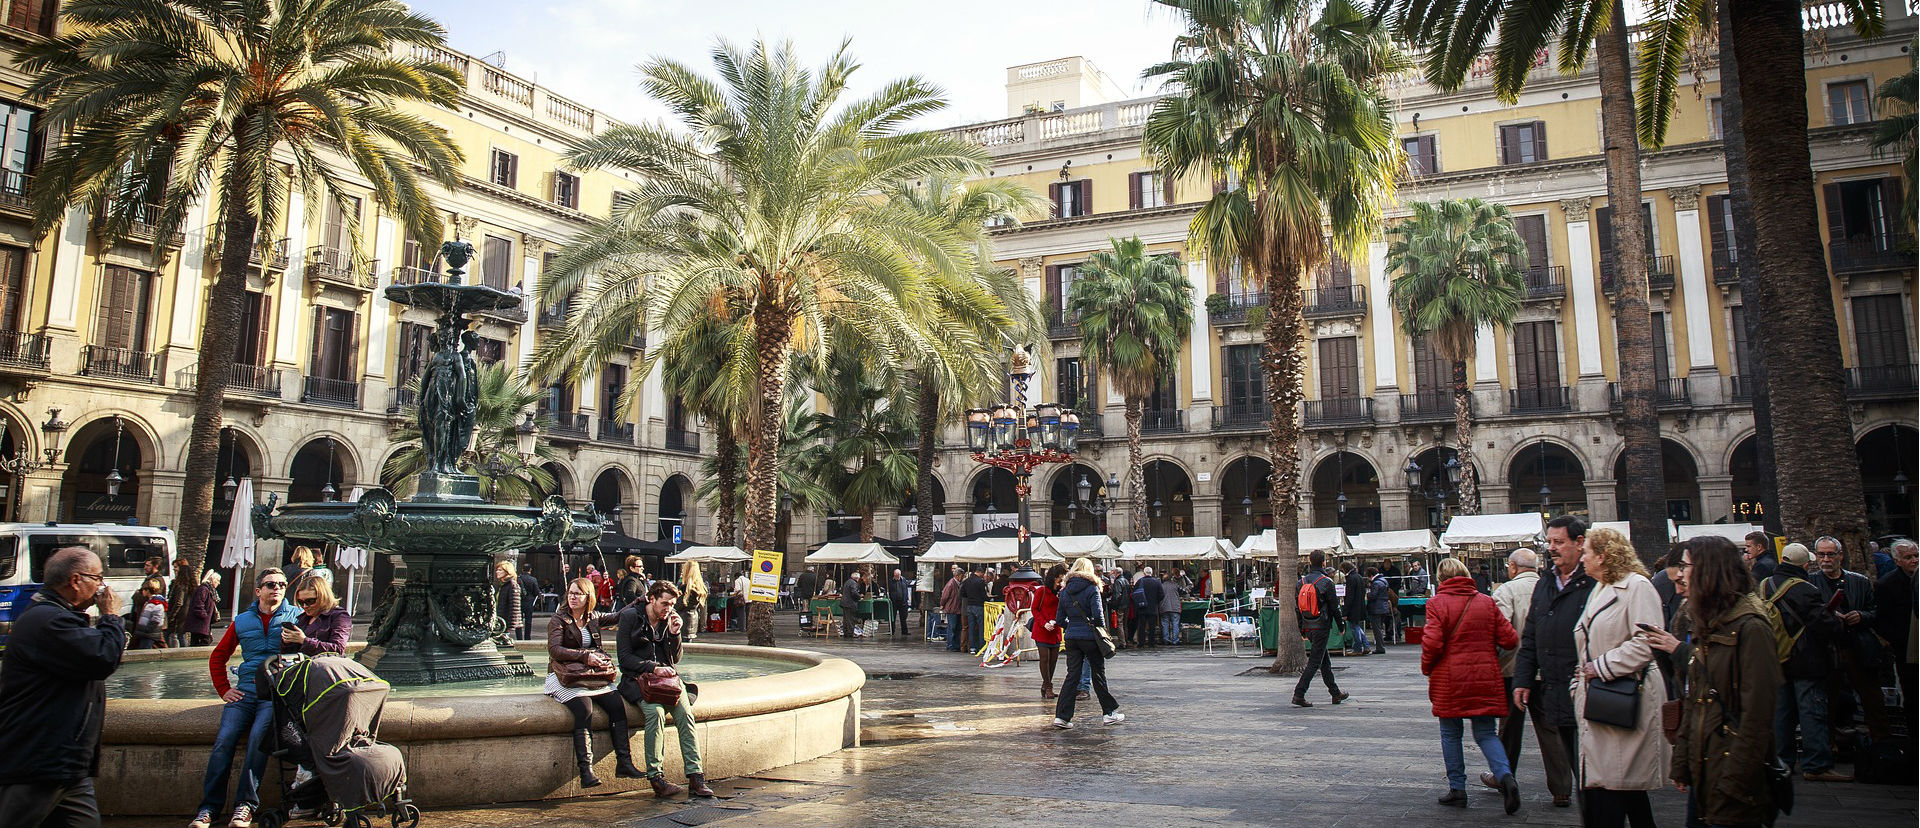 Los ingresos por Turismo en España siguen creciendo a pesar del descenso de visitantes